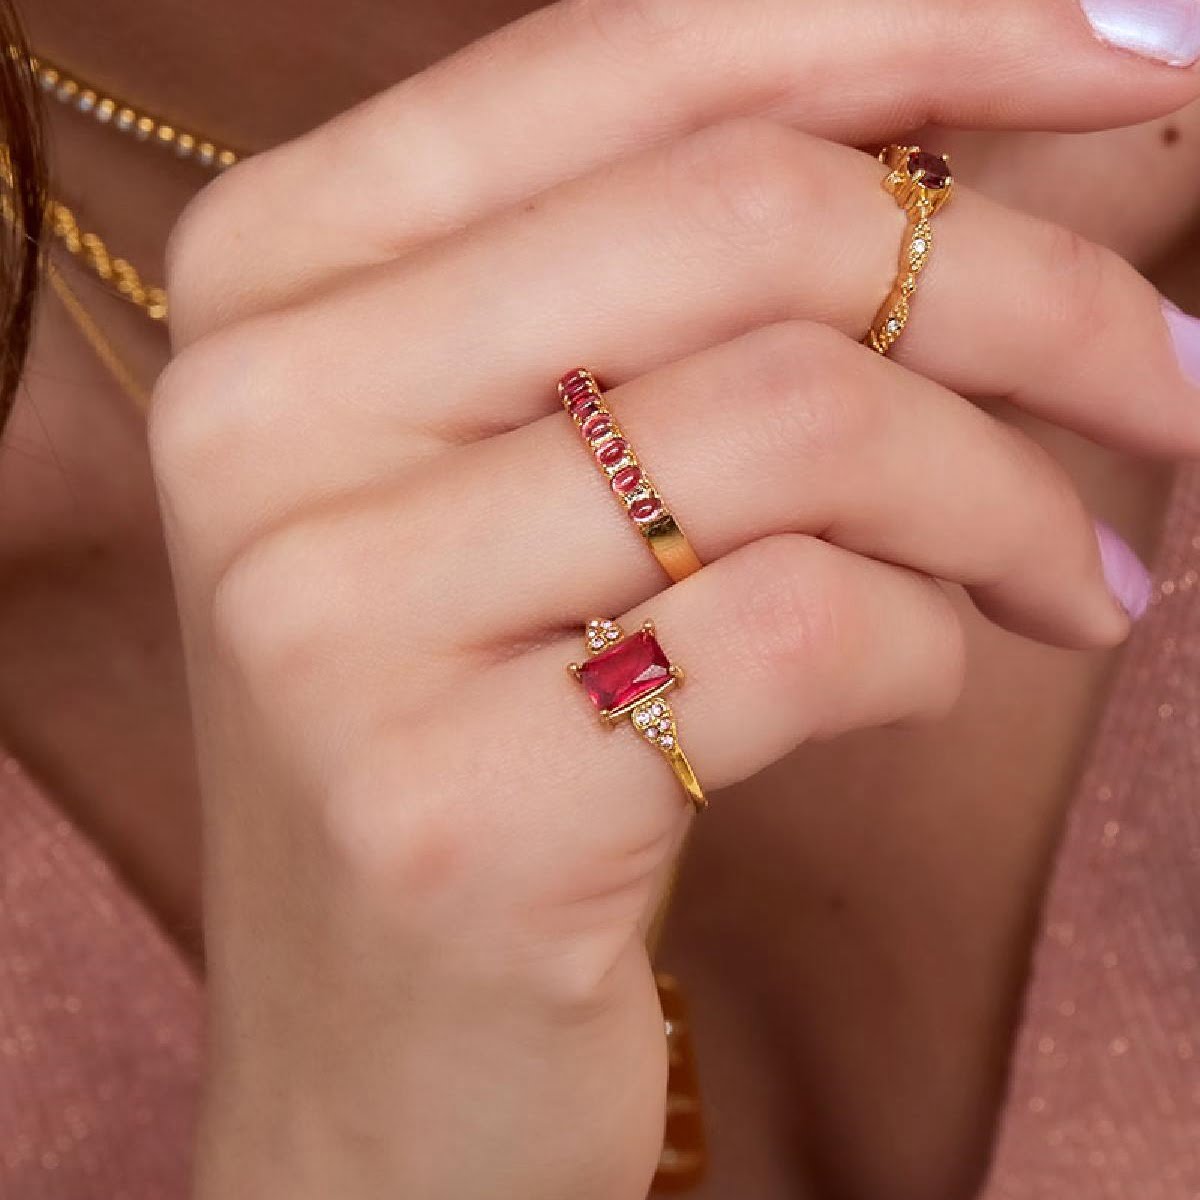 Δαχτυλίδι Ruby σε vintage σχέδιο με κόκκινη πέτρα, δαχτυλίδι με ζιργκόν, δαχτυλίδι με κόκκινη πέτρα, δαχτυλίδι με κρύσταλλα